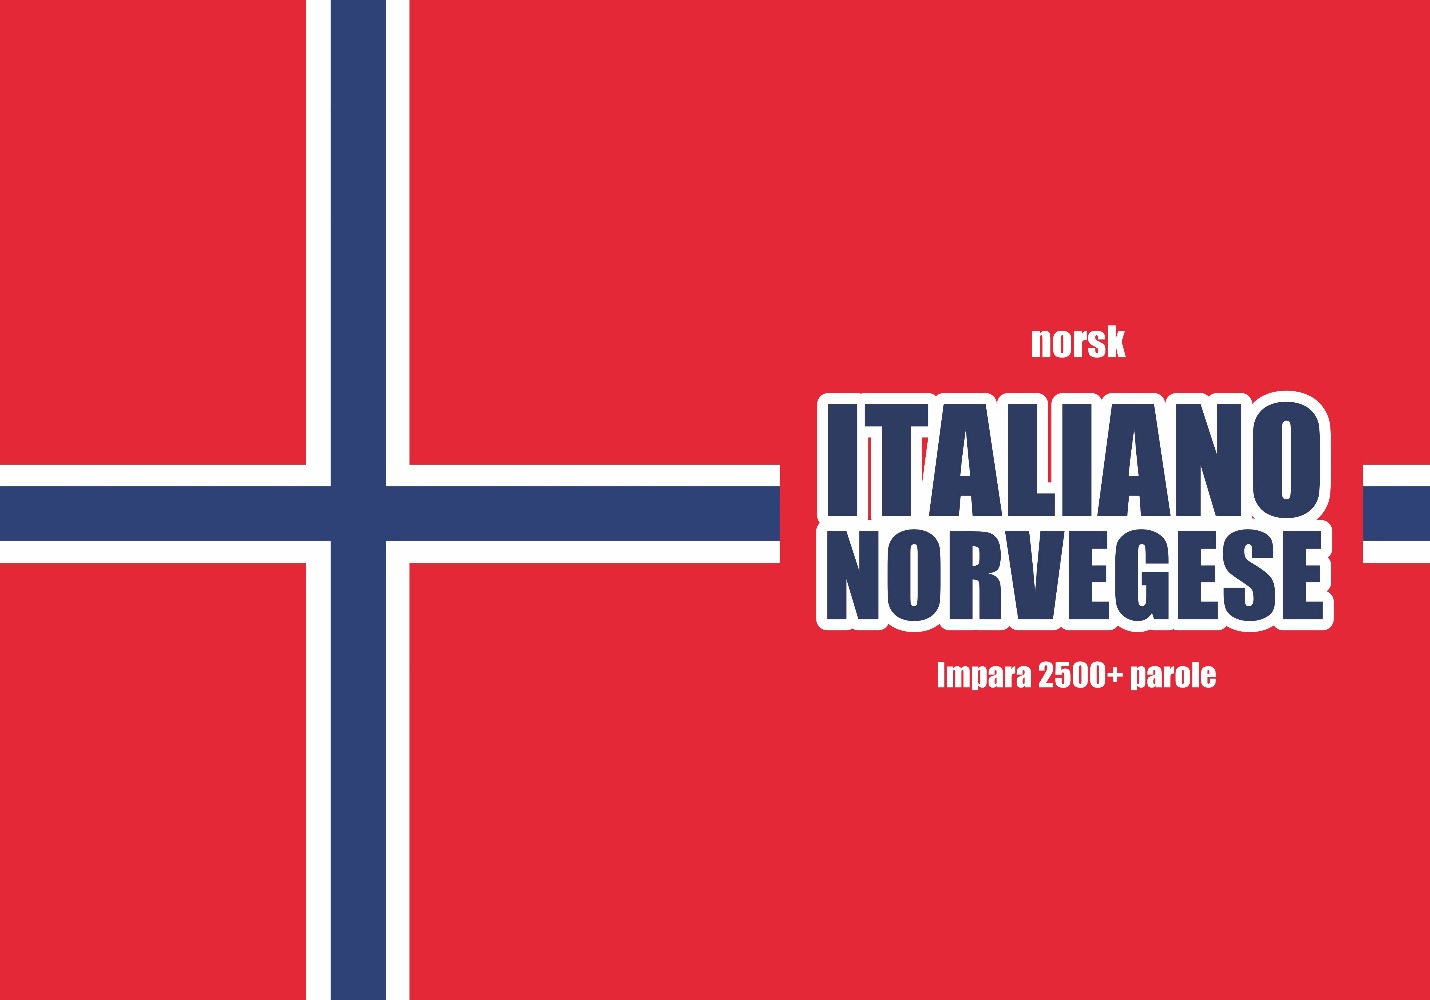 copertina del quaderno di norvegese